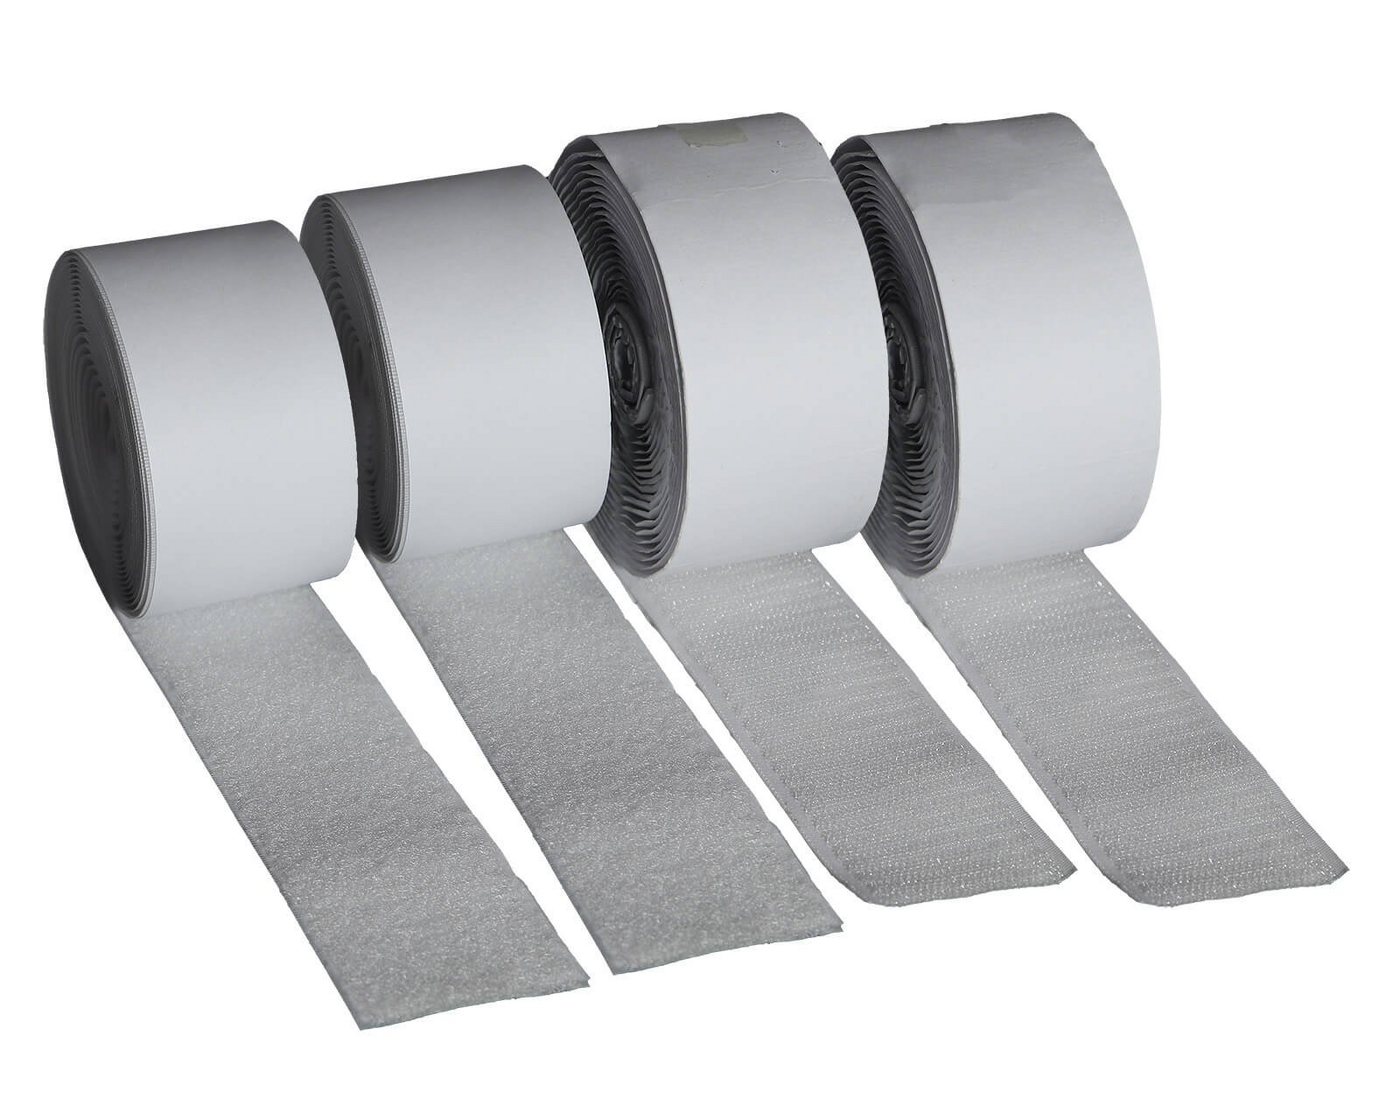 FIXMAN Klett-Klebeband Klettband weiß selbstklebend 4 Rollen Haken und Flausch von FIXMAN